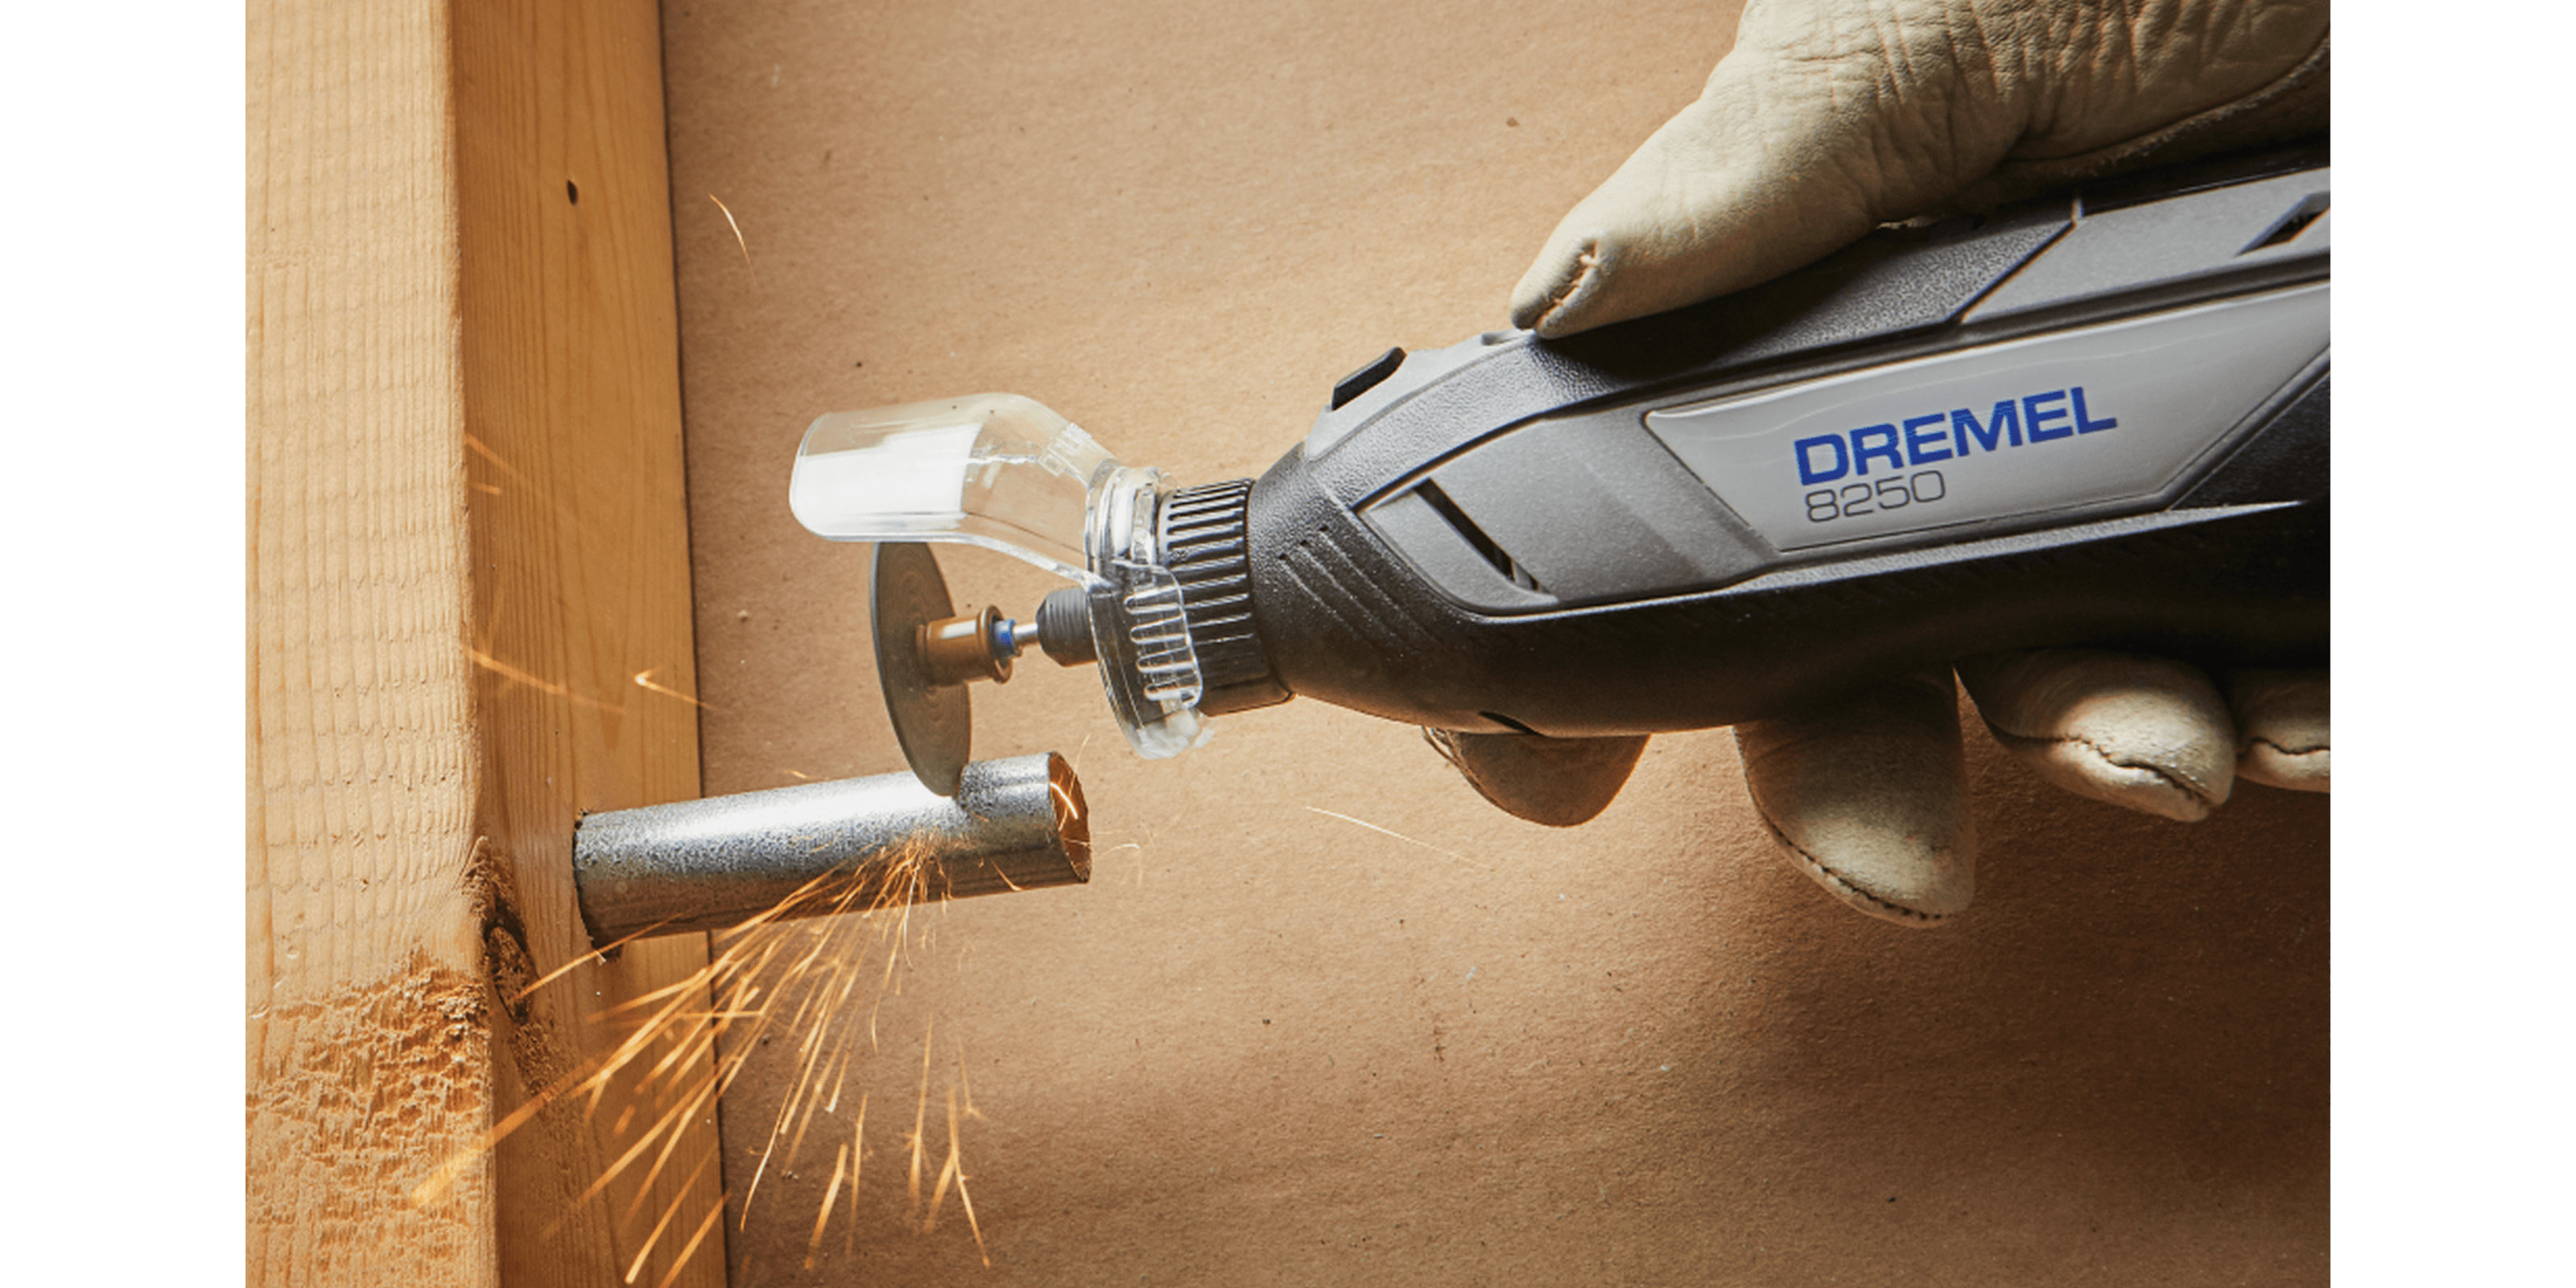 Dremel Accessory Kit 686-01 - DRE686 - Penn Tool Co., Inc